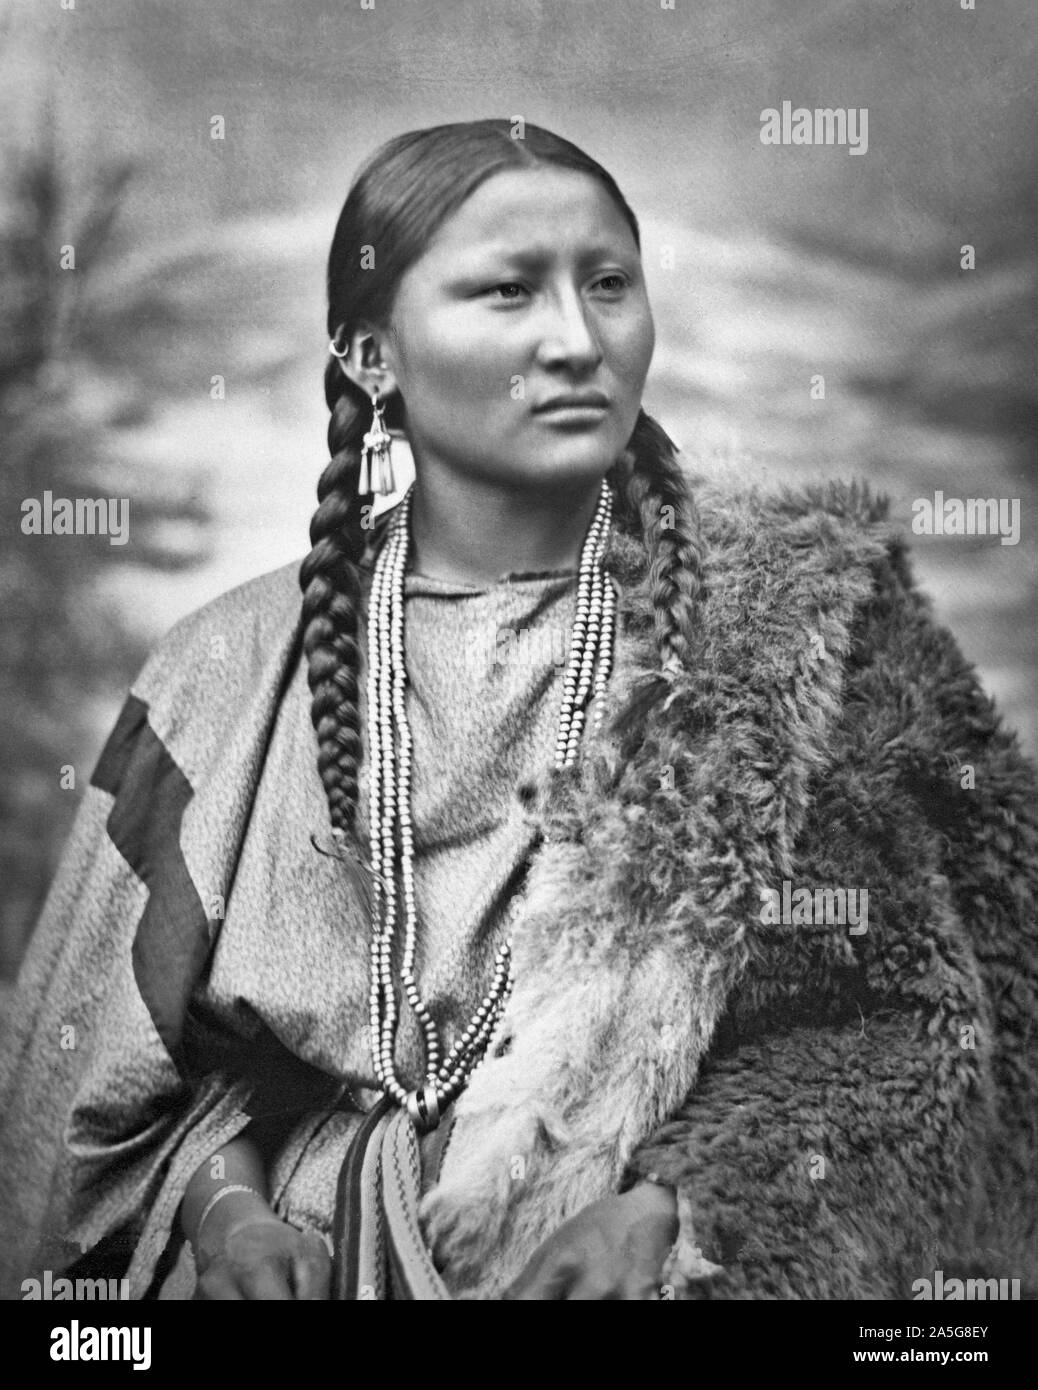 Cheyenne Arapaho ou femme Joli nez à Fort Keogh, Montana, United States.  Elle porte robe chiffon avec ceinture tissu et peau de bison, ainsi que des  boucles d'oreilles, bagues, bracelet et collier.